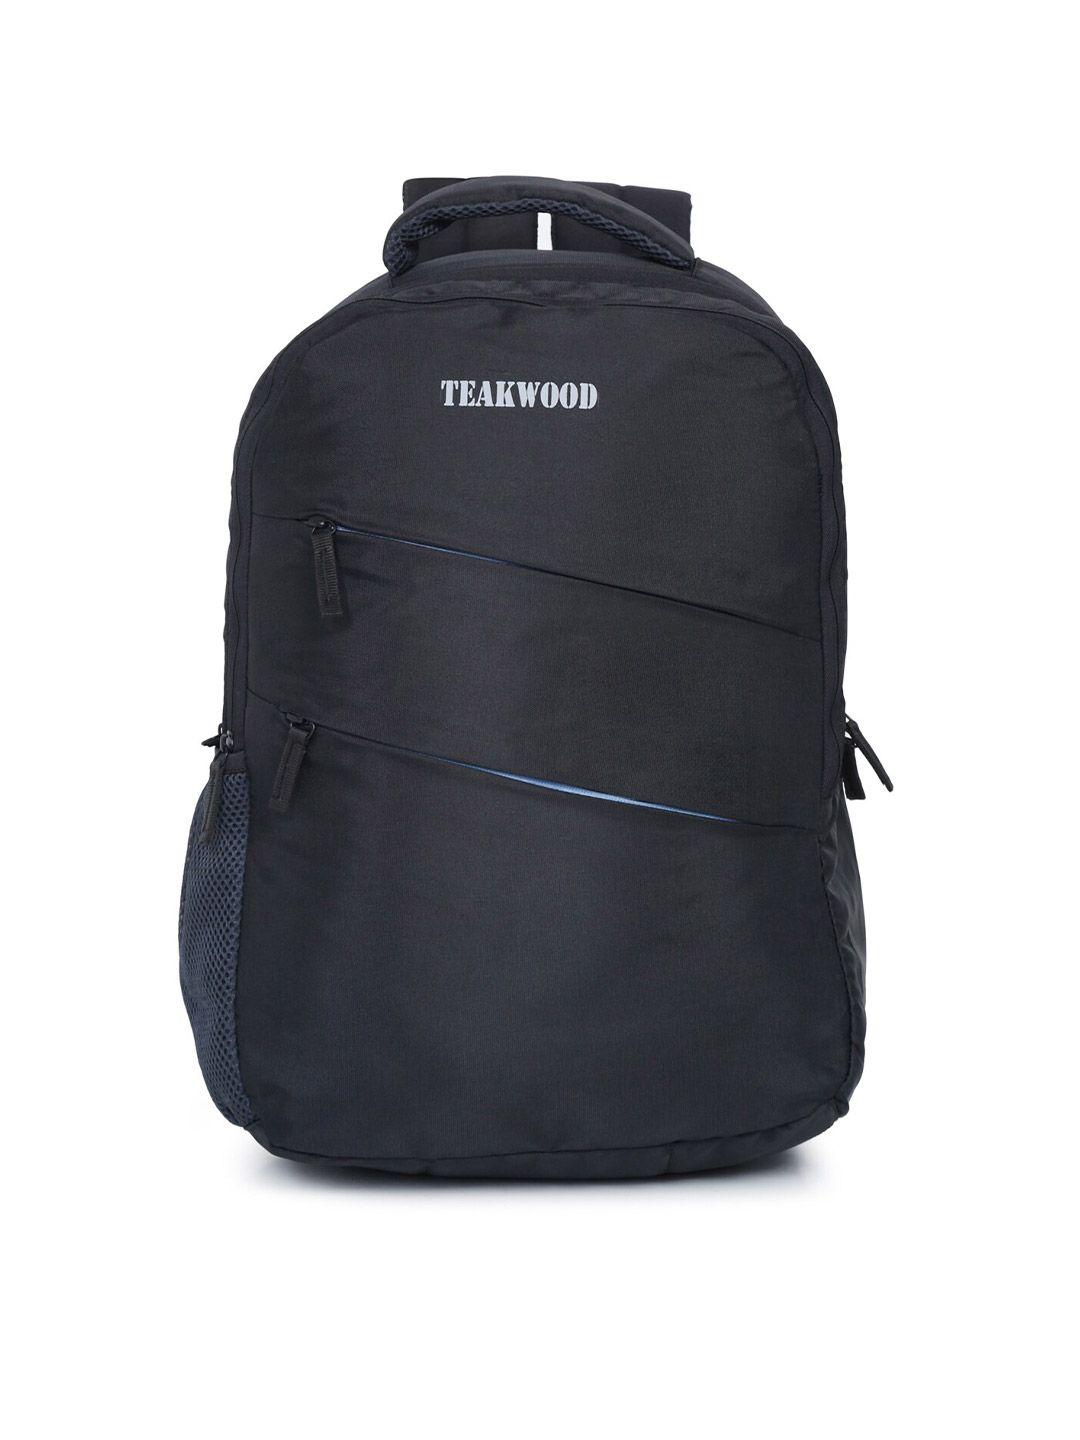 teakwood leathers unisex black solid backpack